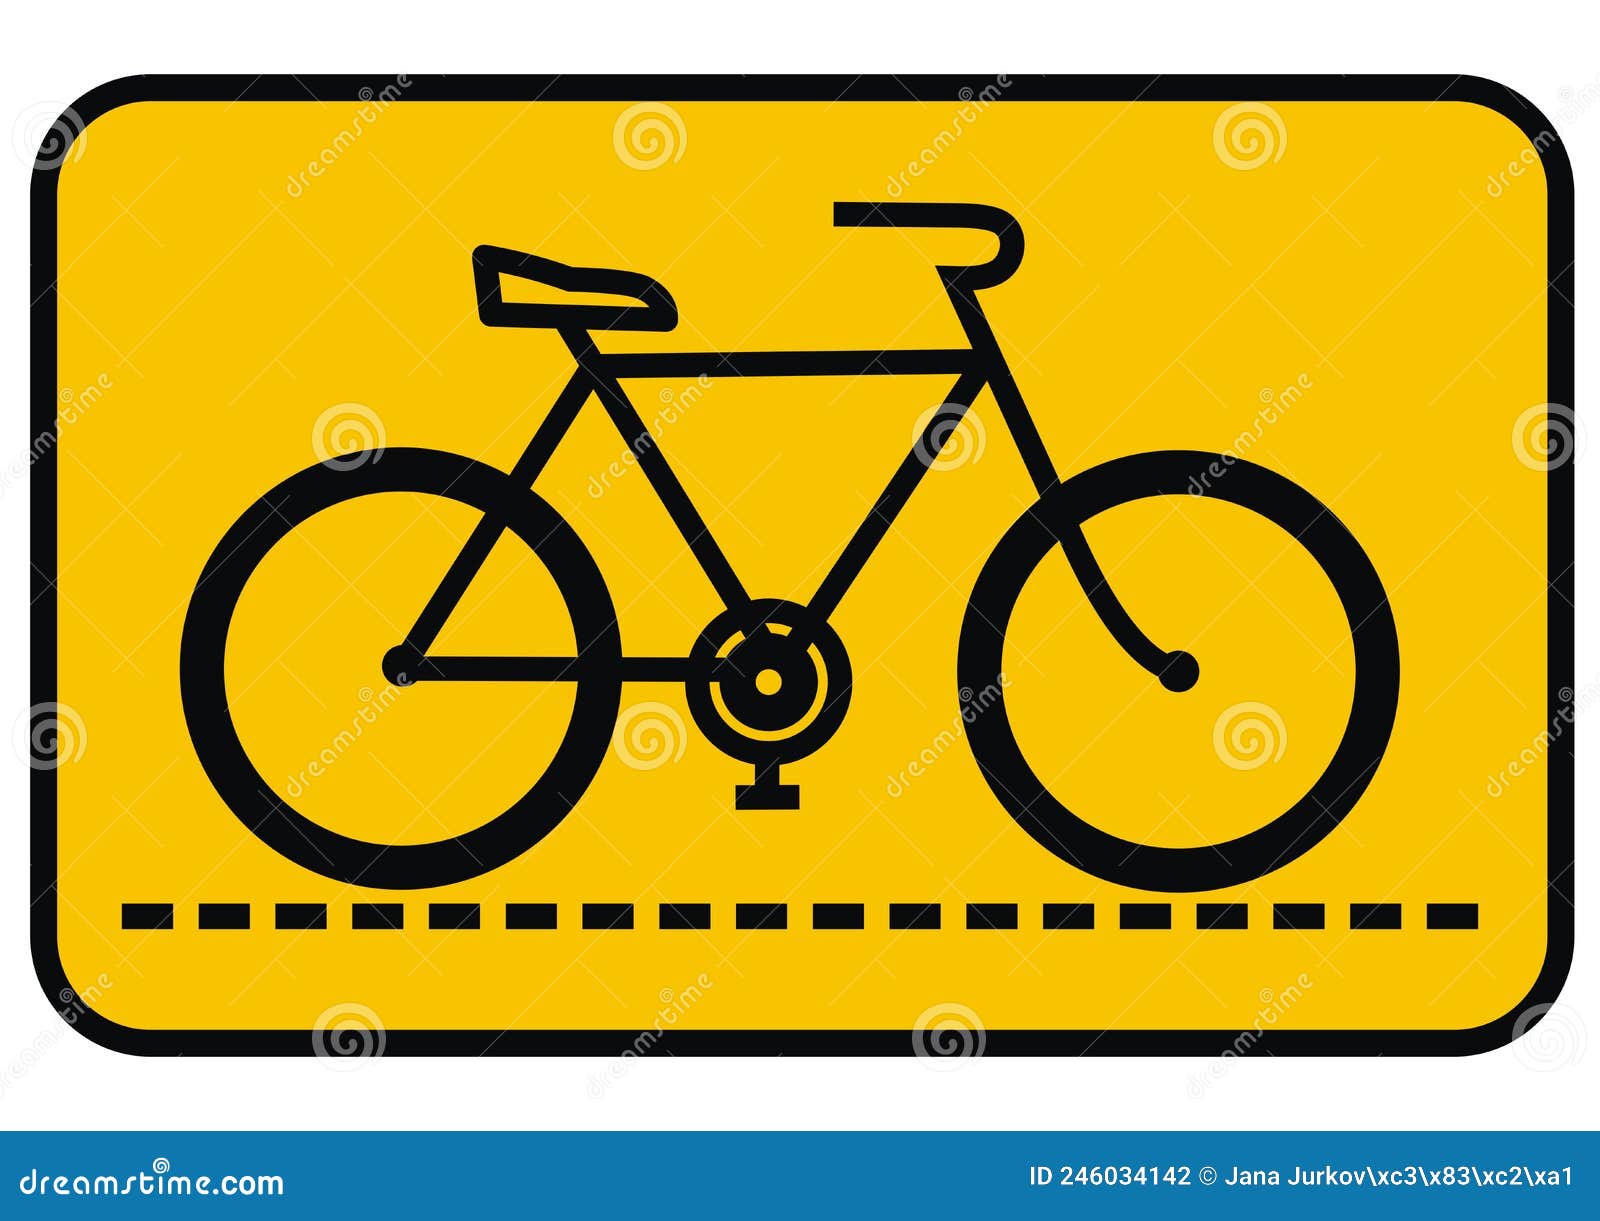 Đây là những biển báo đường và đường xe đạp vô cùng quan trọng để bảo đảm an toàn giao thông trên đường. Với biểu tượng đen trên nền cam, chúng rõ ràng và dễ nhận biết, giúp cho người tham gia giao thông có thể di chuyển một cách an toàn và hiệu quả. Bạn có muốn xem thêm về hình ảnh liên quan đến từ khóa này?